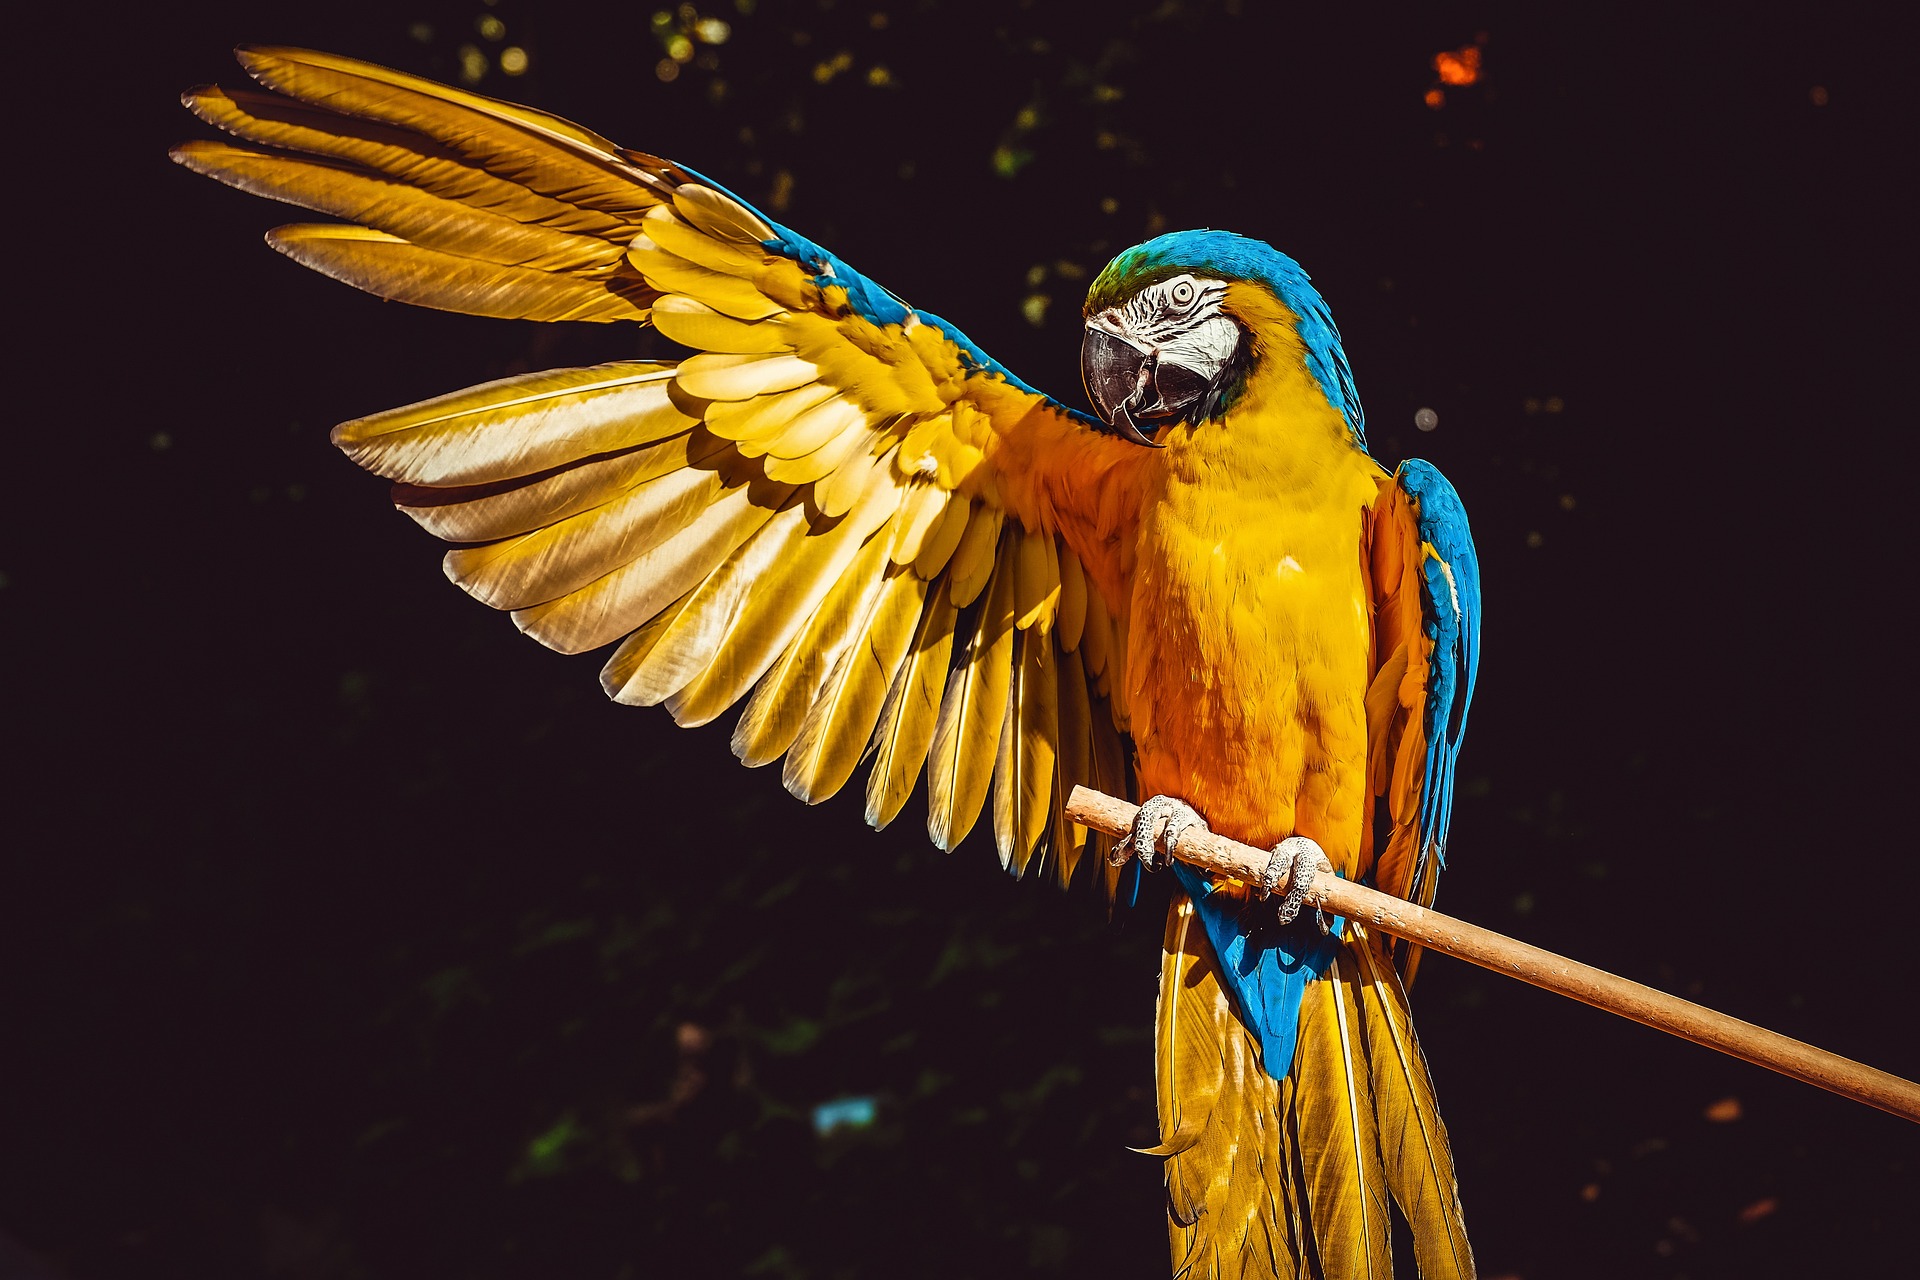 Πώς καταρρίφθηκε η επιστημονική άποψη ότι τα πτηνά δεν είναι “έξυπνα”. Τι έδειξε η έρευνα σε παπαγάλους και κοράκια